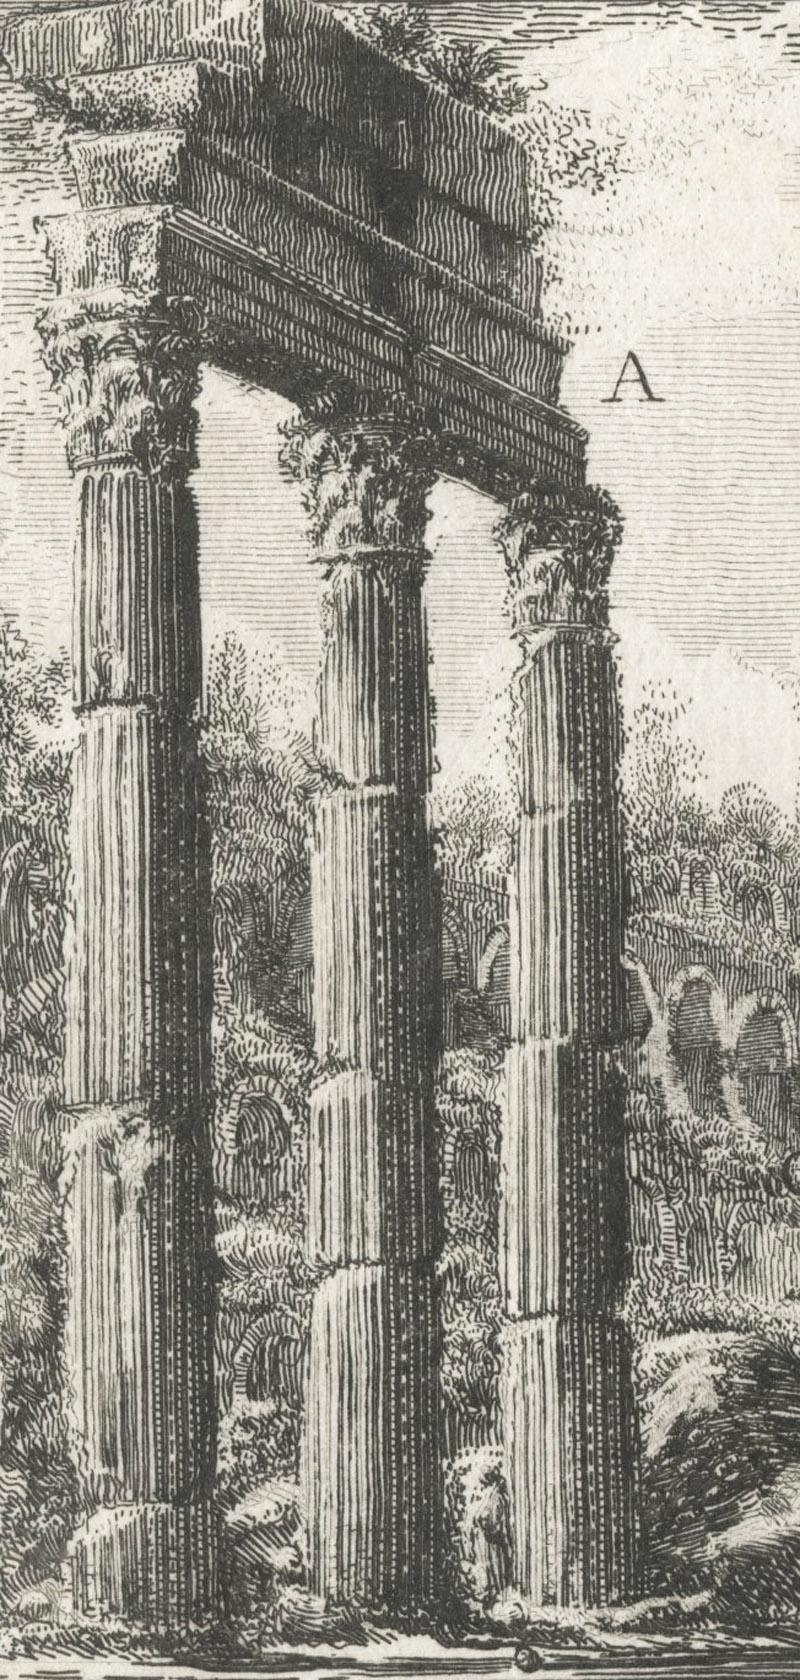 XXXIII Abb. I Avanzo del Tempio di Castore e Polluce  – Print von Giovanni Battista Piranesi